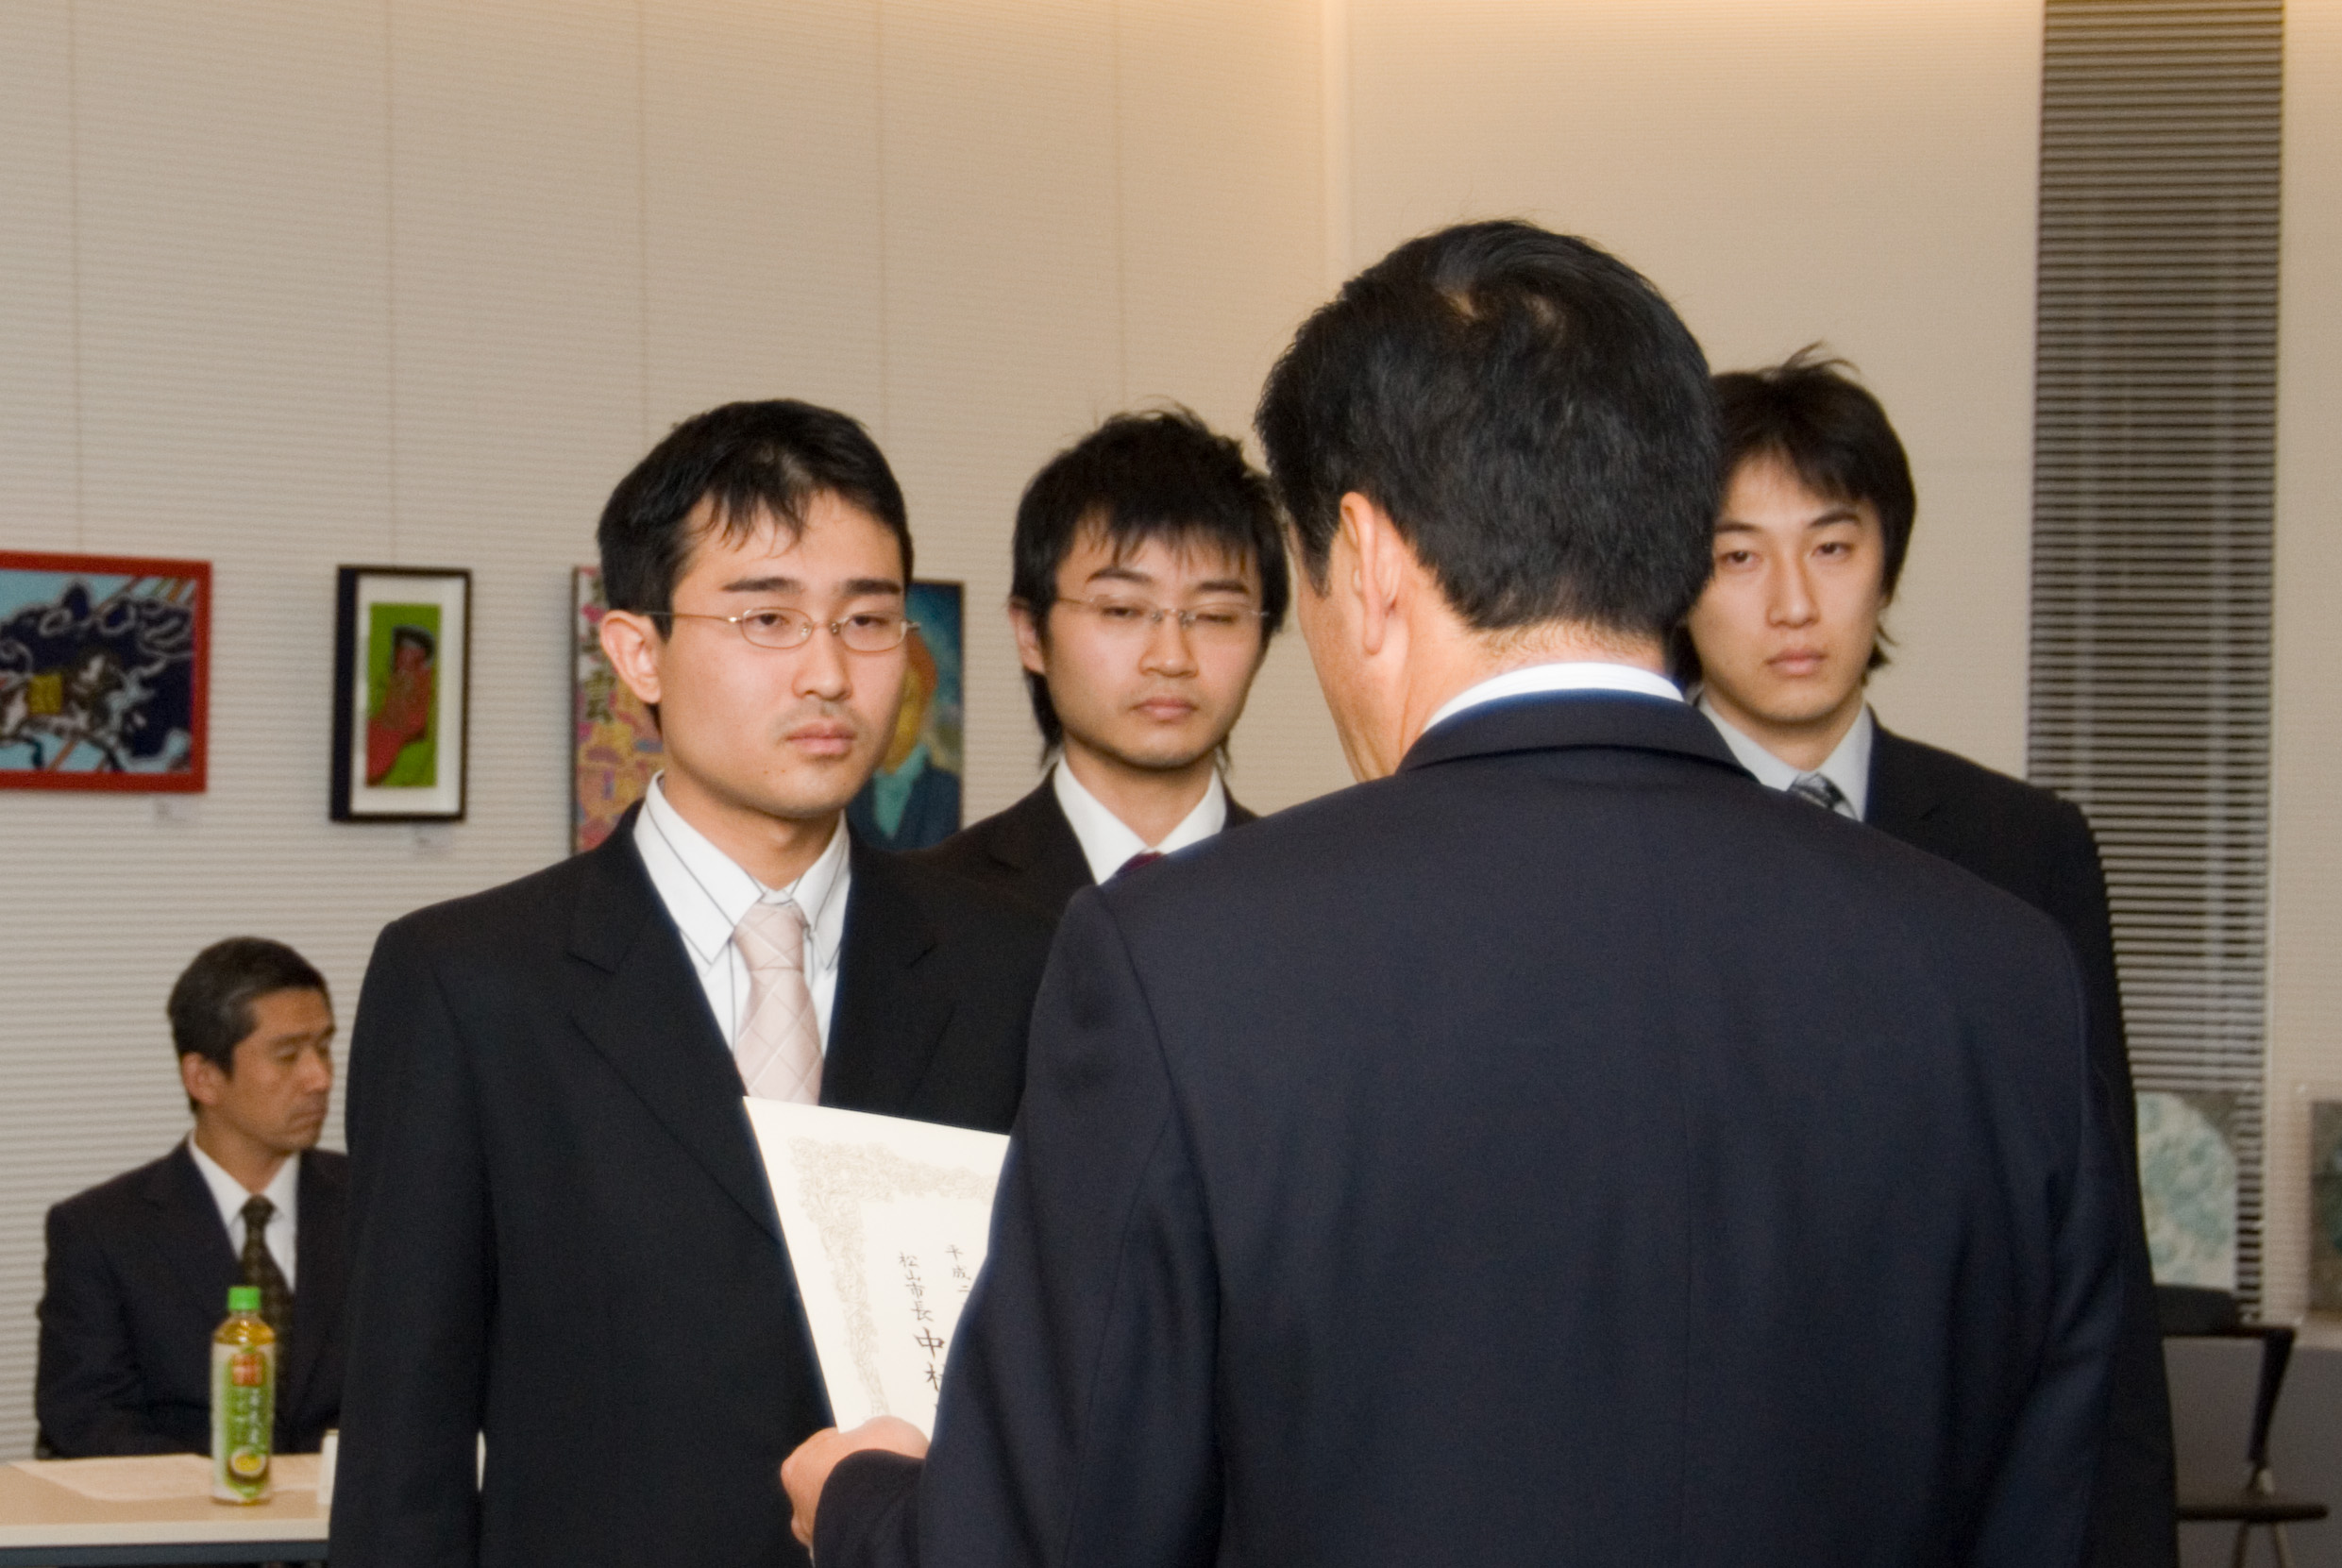 医学部学生チームが松山市主催「第10回学生による政策論文」で優秀賞を受賞